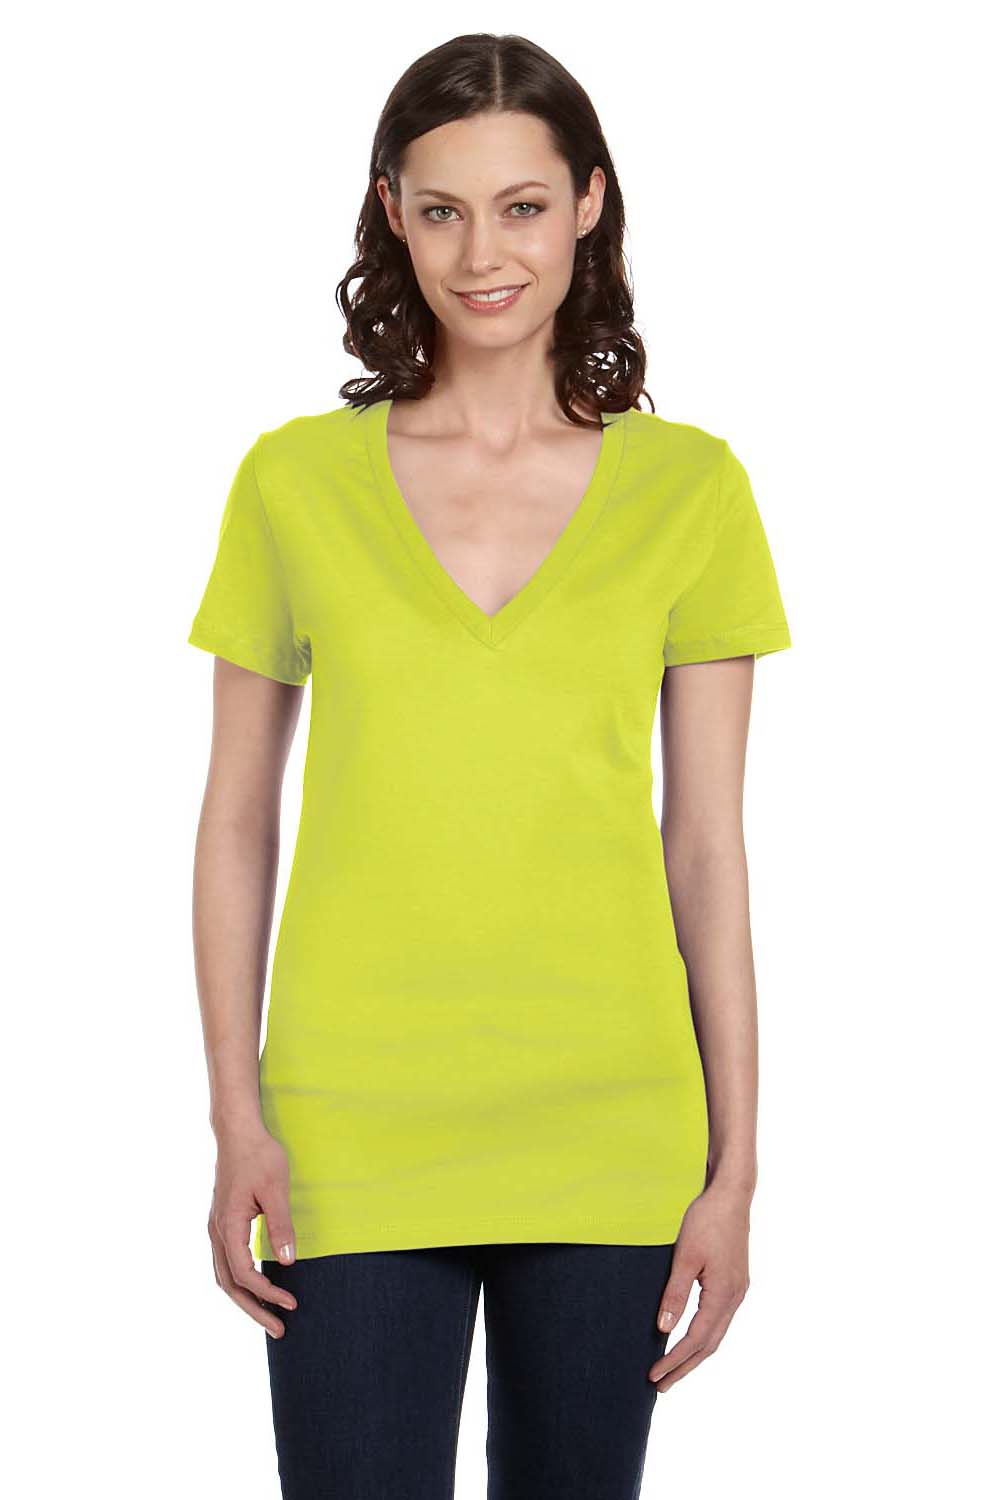 Bella + Canvas B6035 Womens Jersey Short Sleeve Deep V-Neck T-Shirt Neon Yellow Front